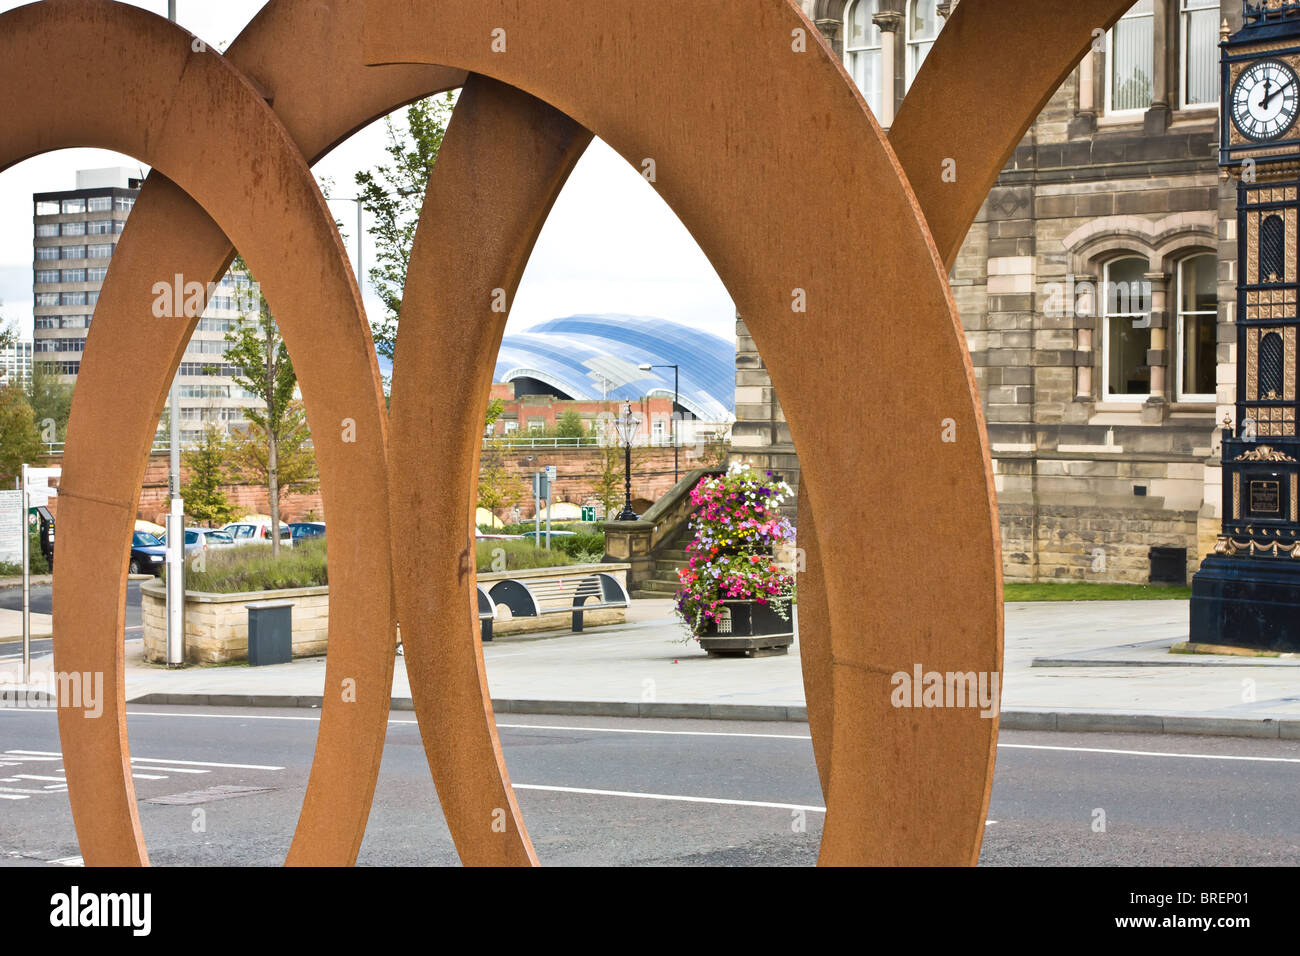 Escultura de arte público por John credo llamado aceleración situados fuera de la ciudad de Gateshead Hall. Foto de stock